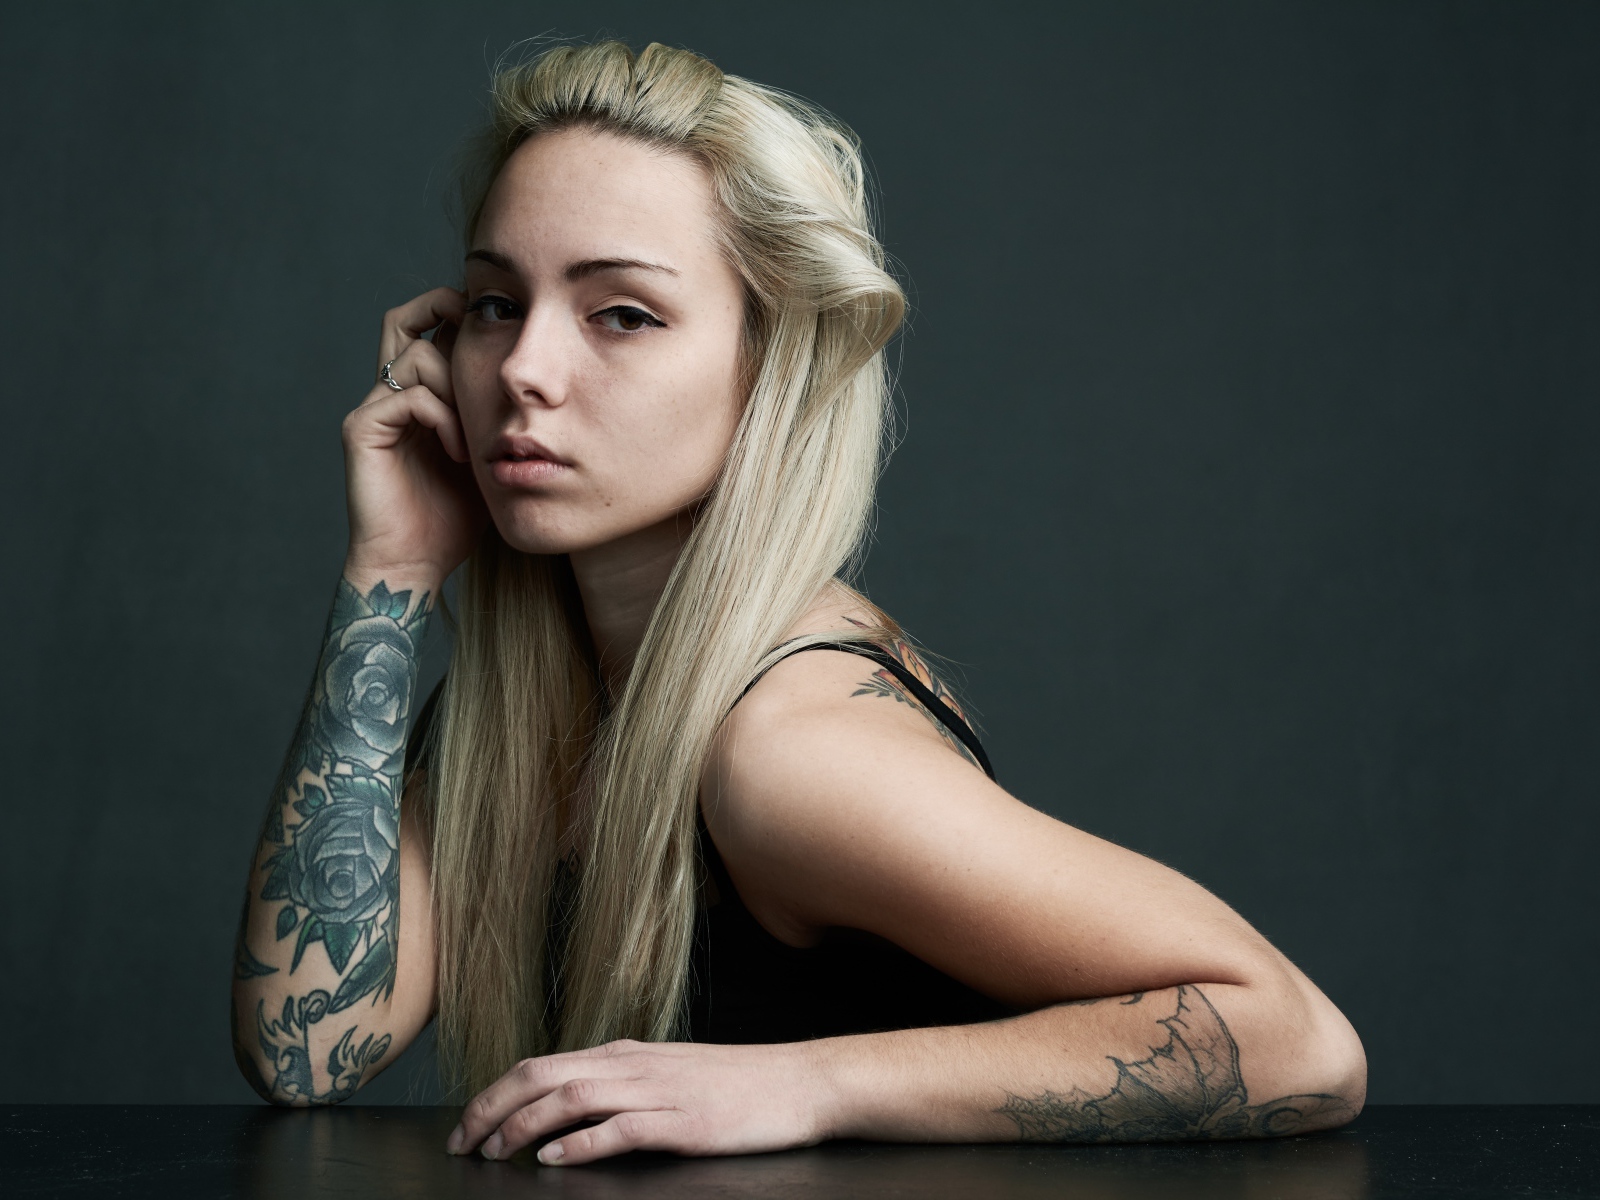 Красивая блондинка с татуировками на теле на сером фоне